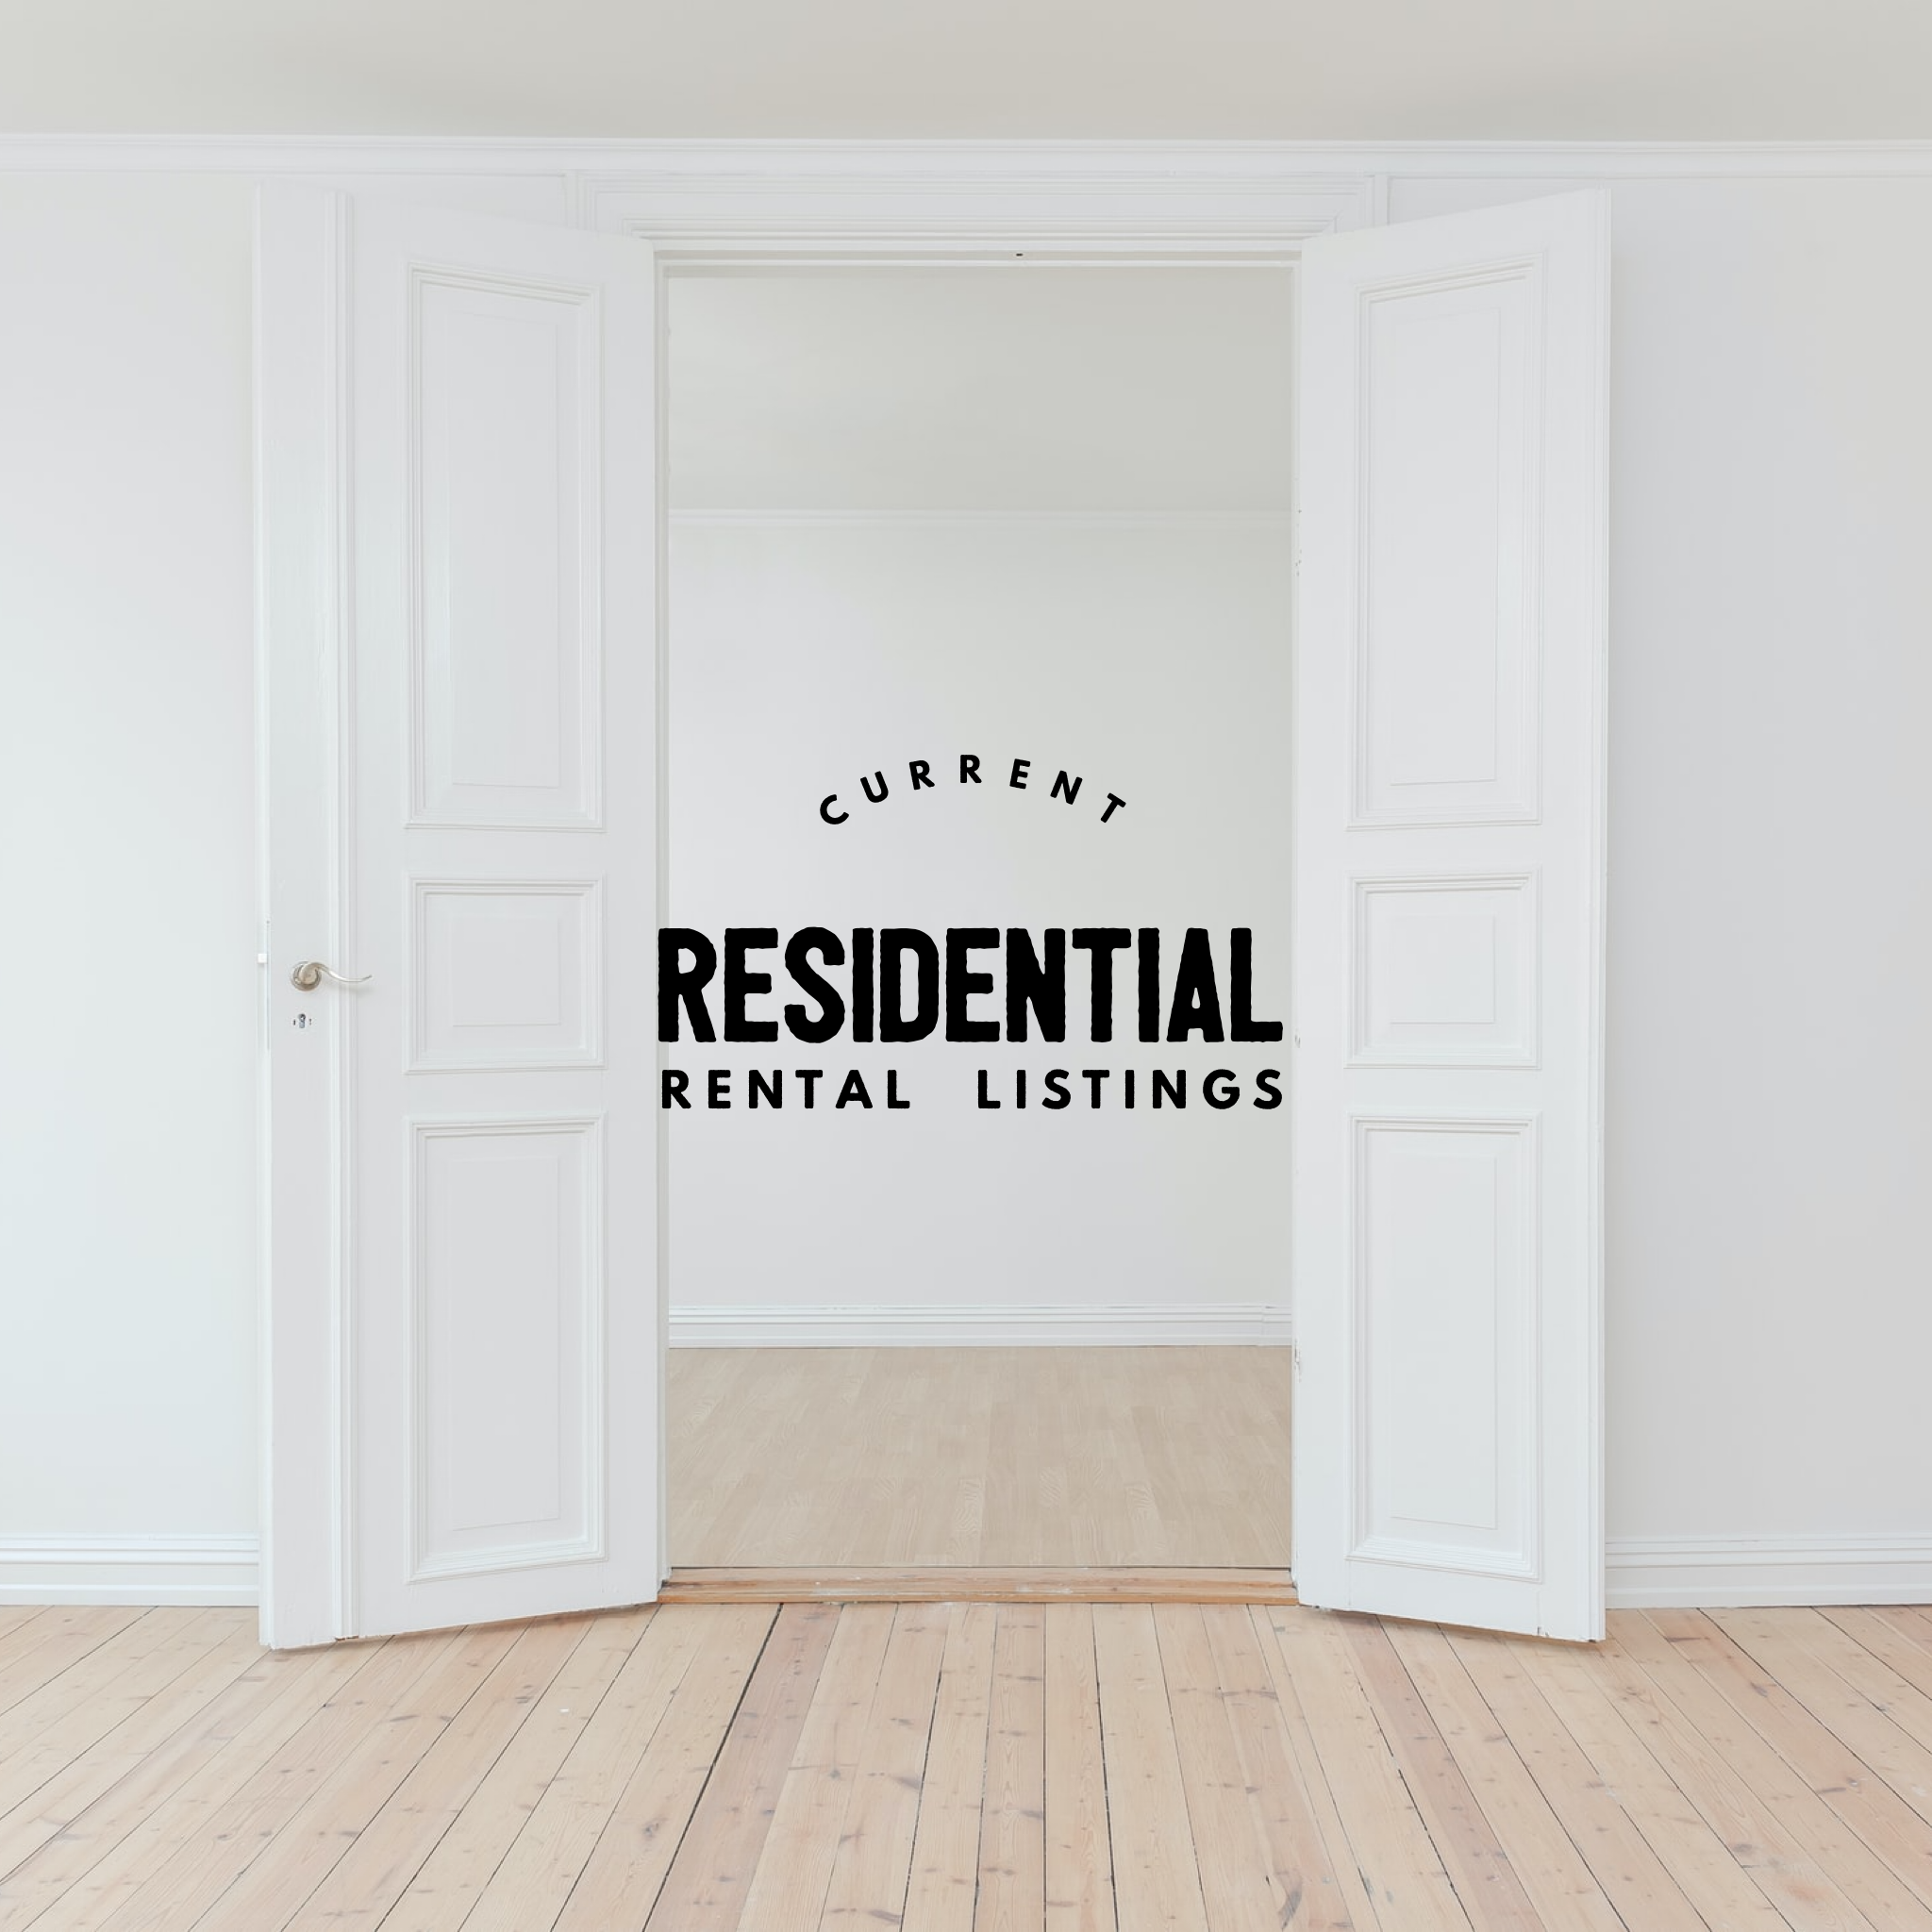 Residential Rental Listings as of 5/20/21